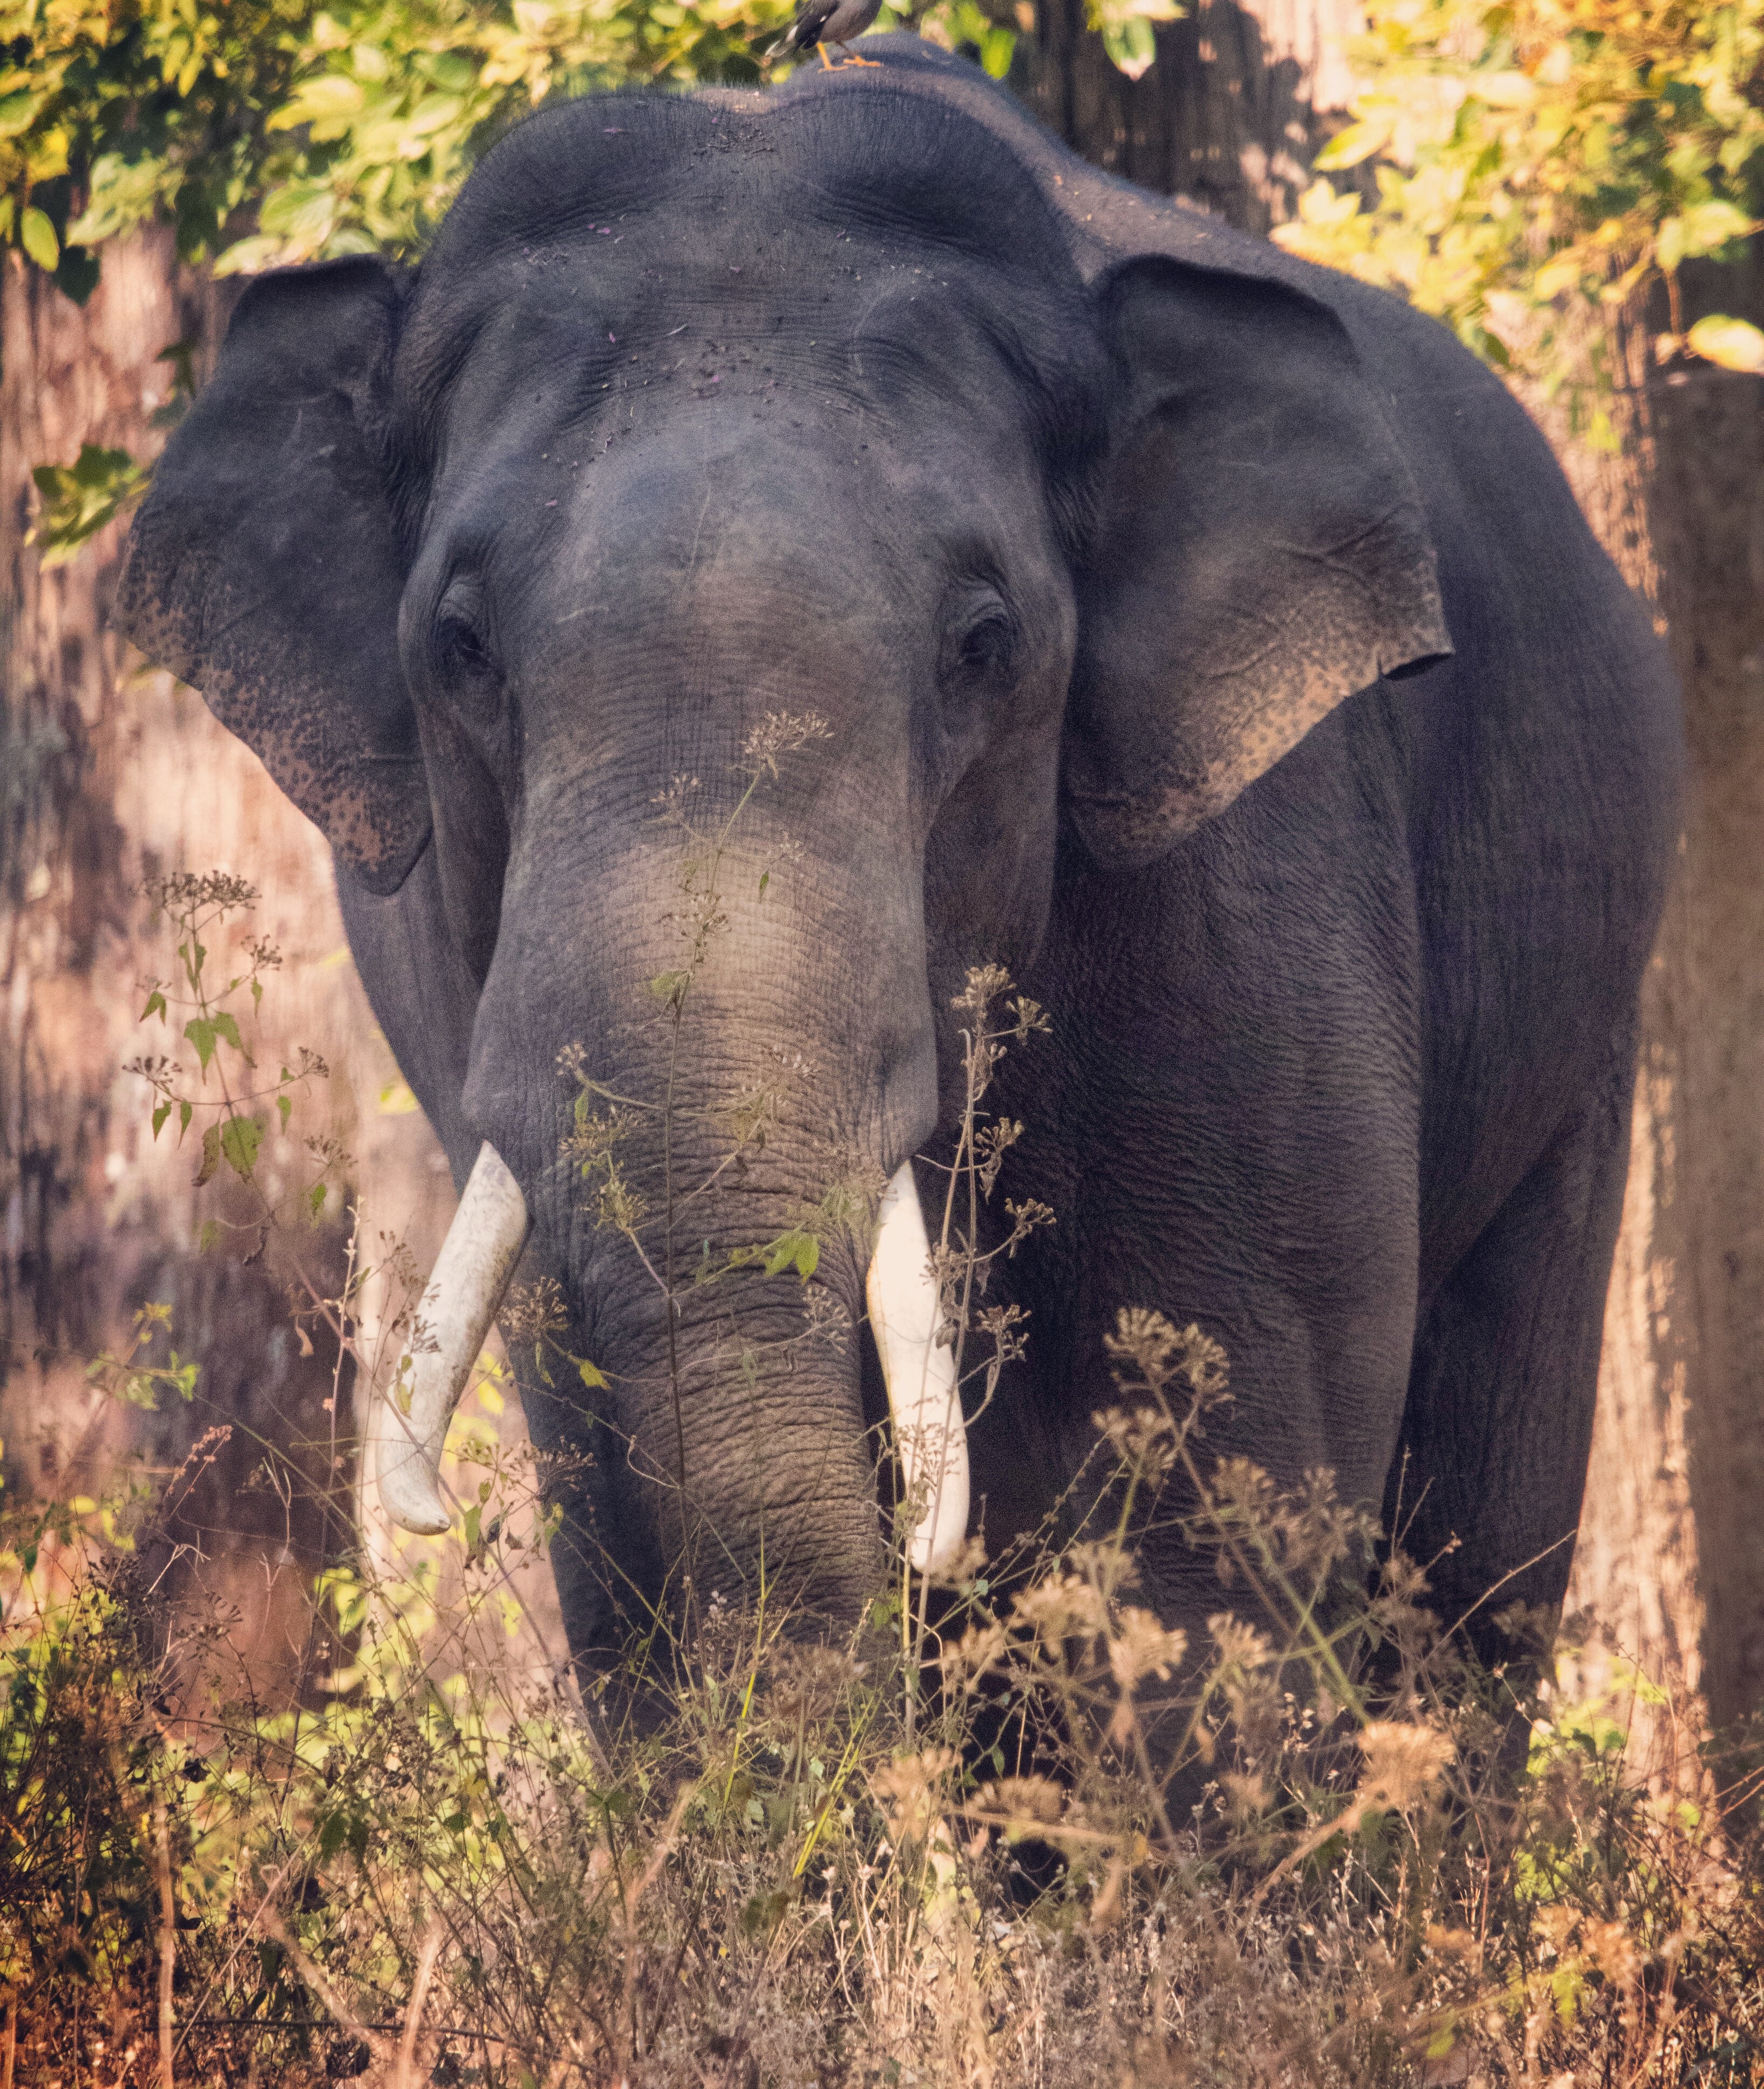 Asian elephant. Photo by Uday Phillips on Unsplash